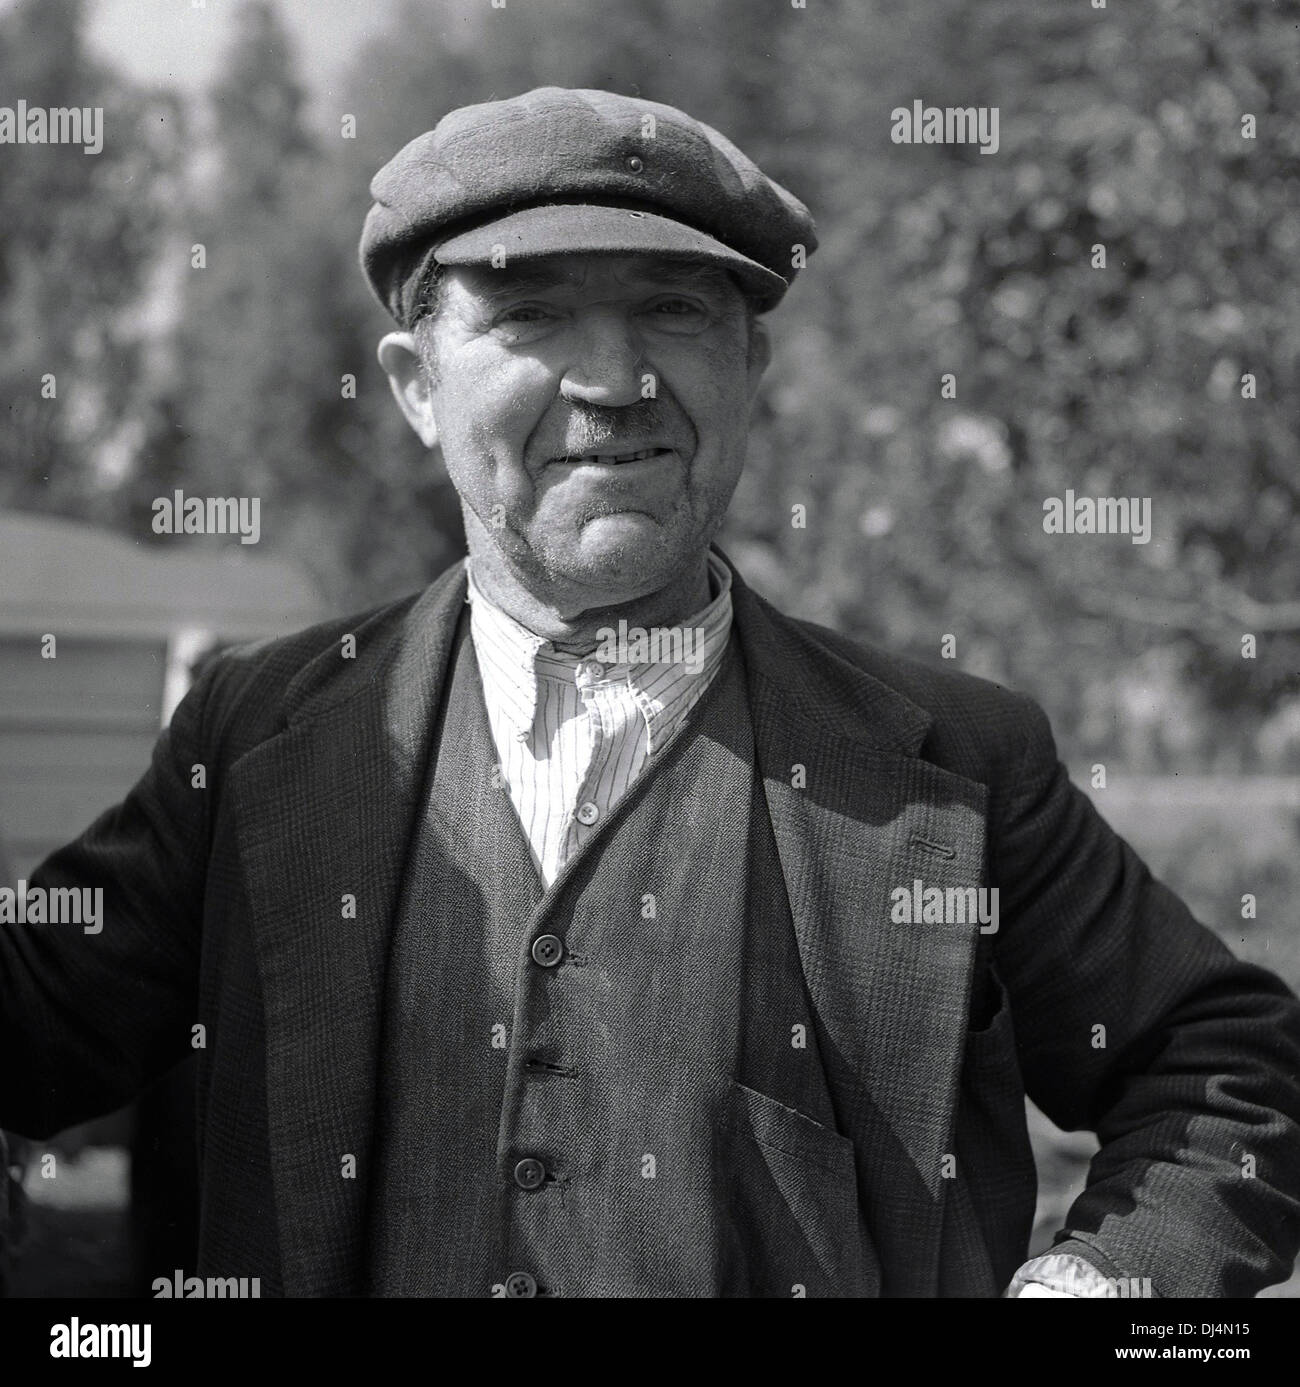 Historisches Bild, 1950s. Porträt eines stolzen kleinen Halters oder Kleinbauern in der Kleidung der Ära und einer flachen Mütze, auf seinem Land stehend, Norfolk, England, Großbritannien. Stockfoto